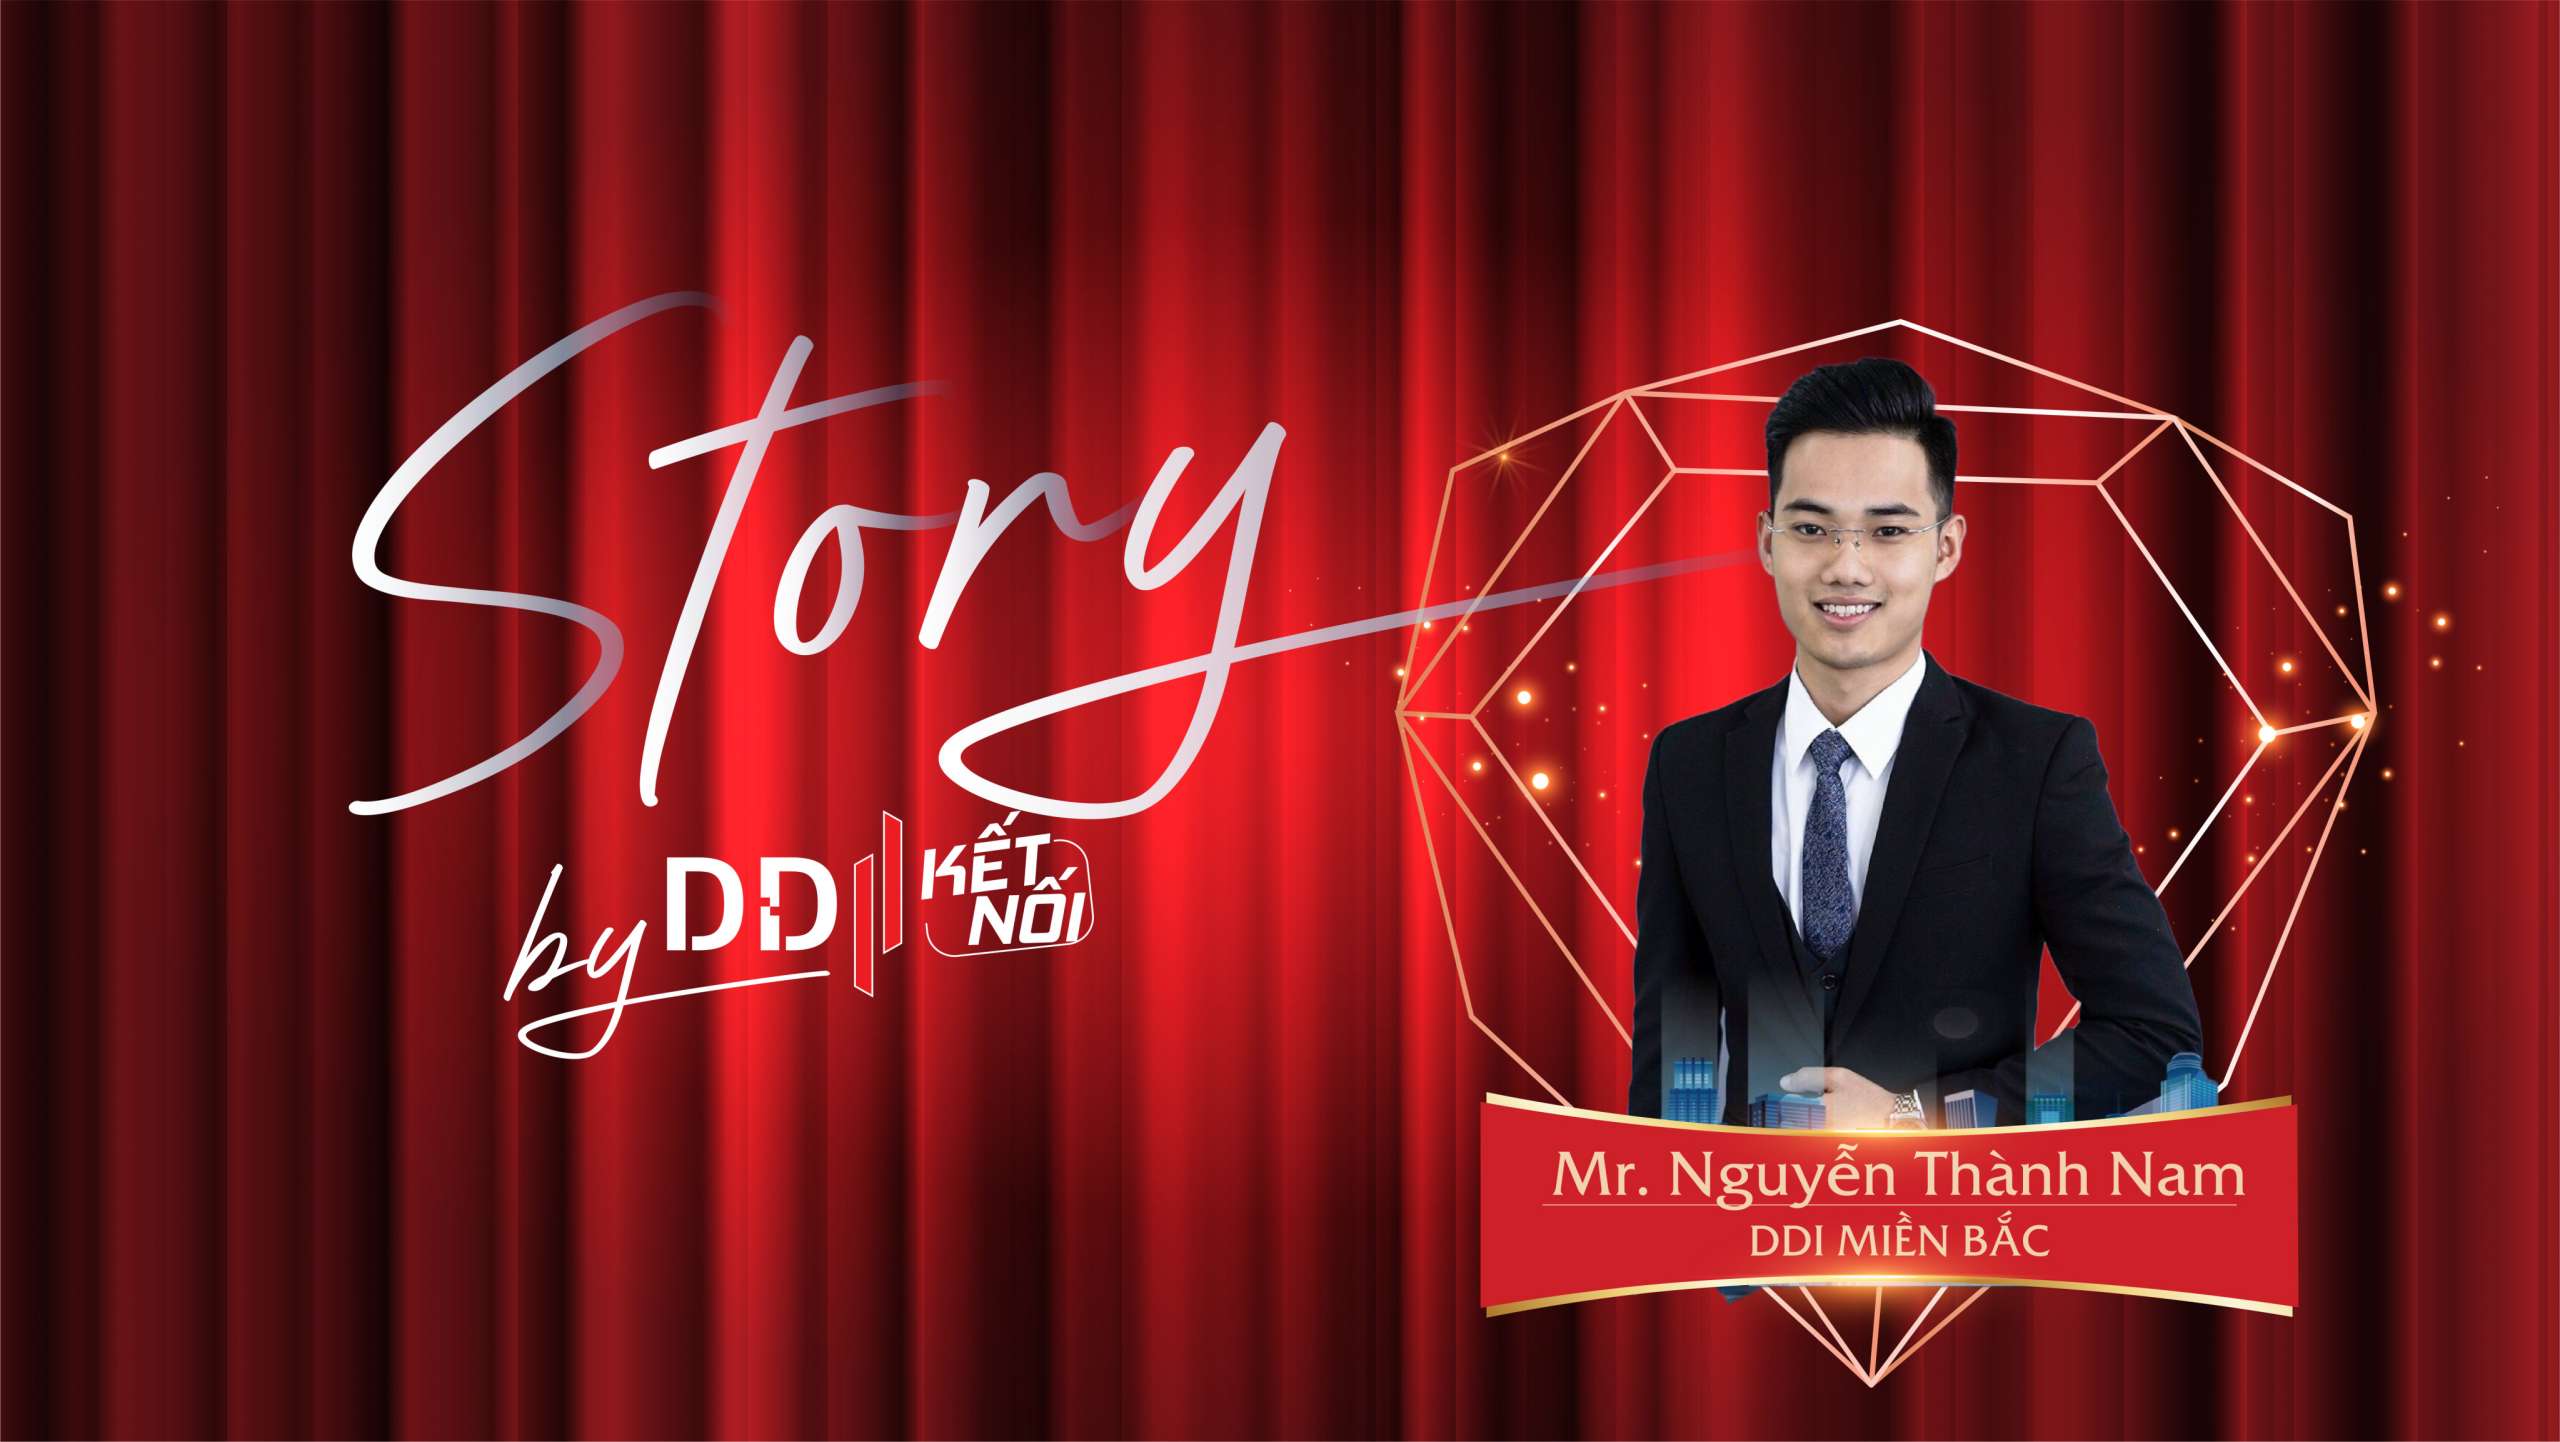 Nguyễn Thành Nam (DDI miền Bắc): Câu chuyện chọn nghề